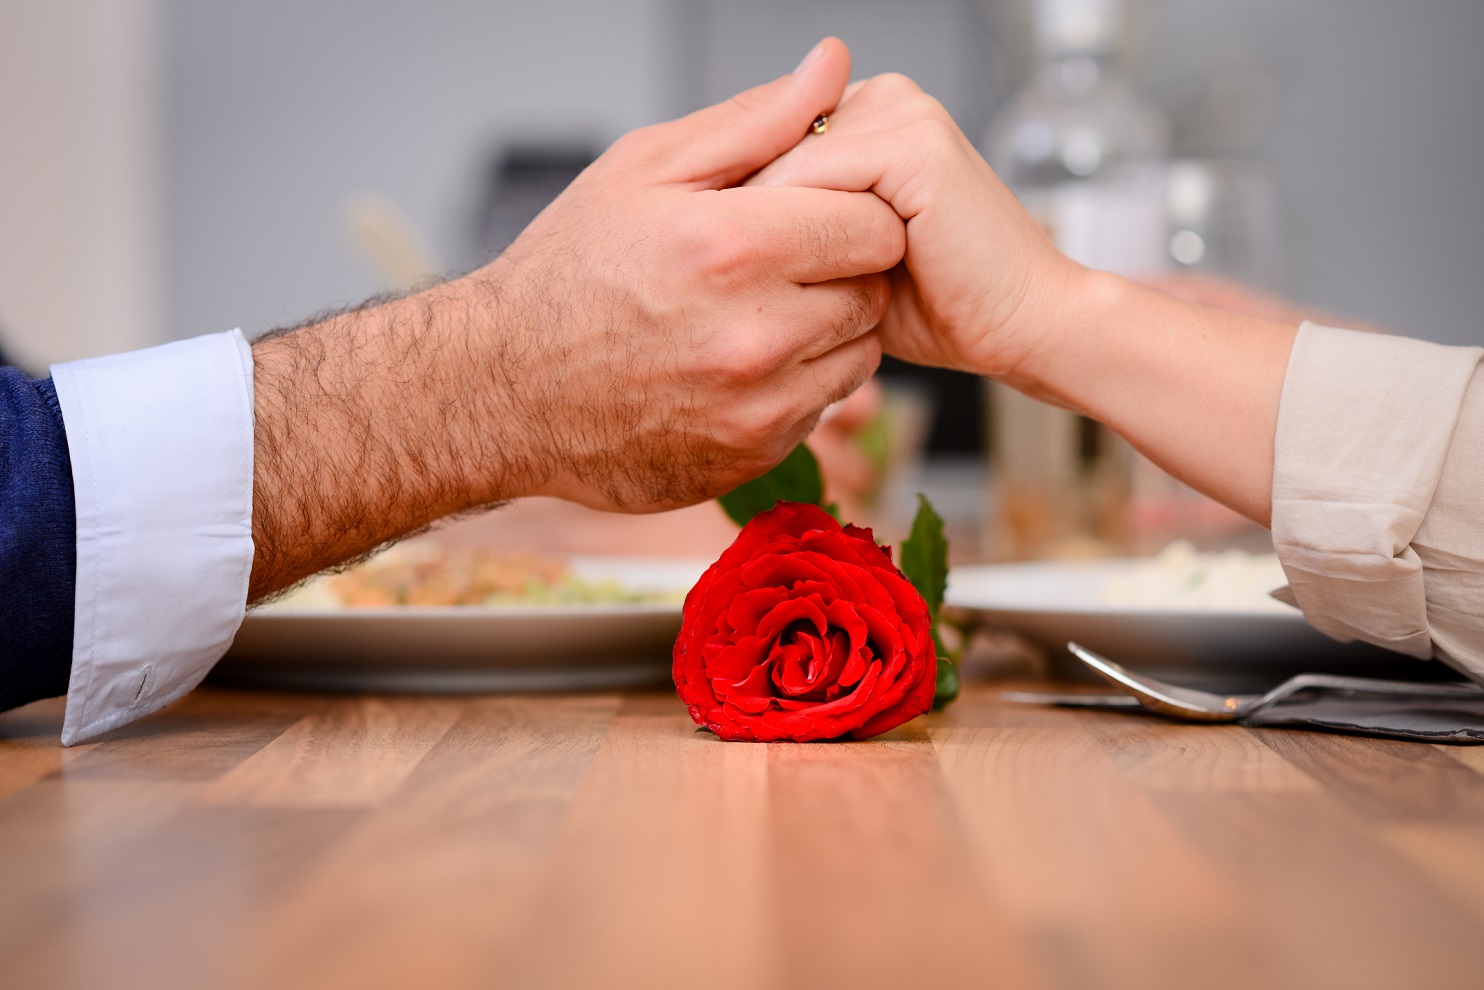 San Valentín 2021: regalos originales para no celebrar el día de los  enamorados con flores y bombones